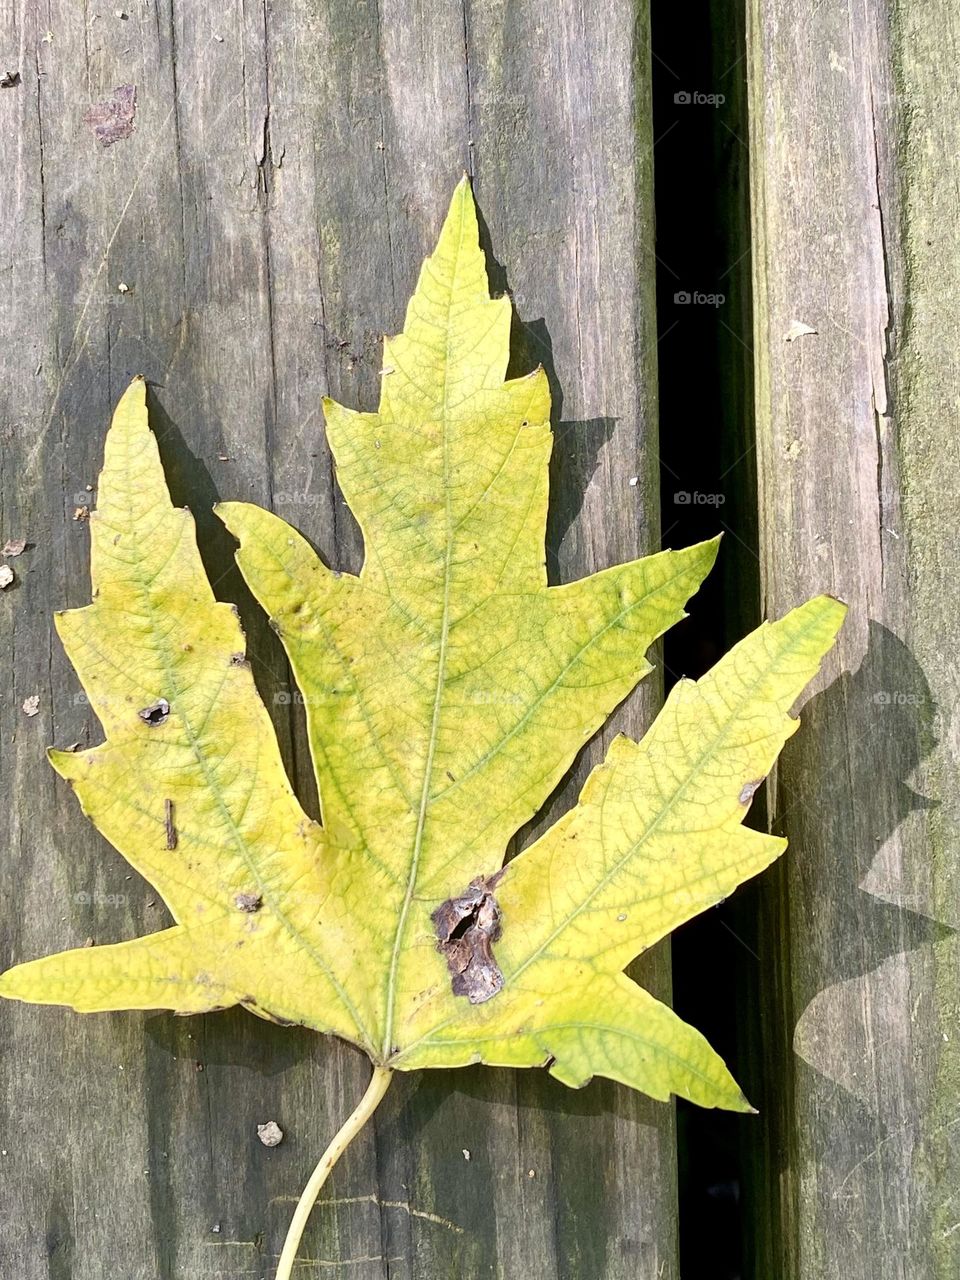 A yellow maple leaf sitting on a wet boardwalk